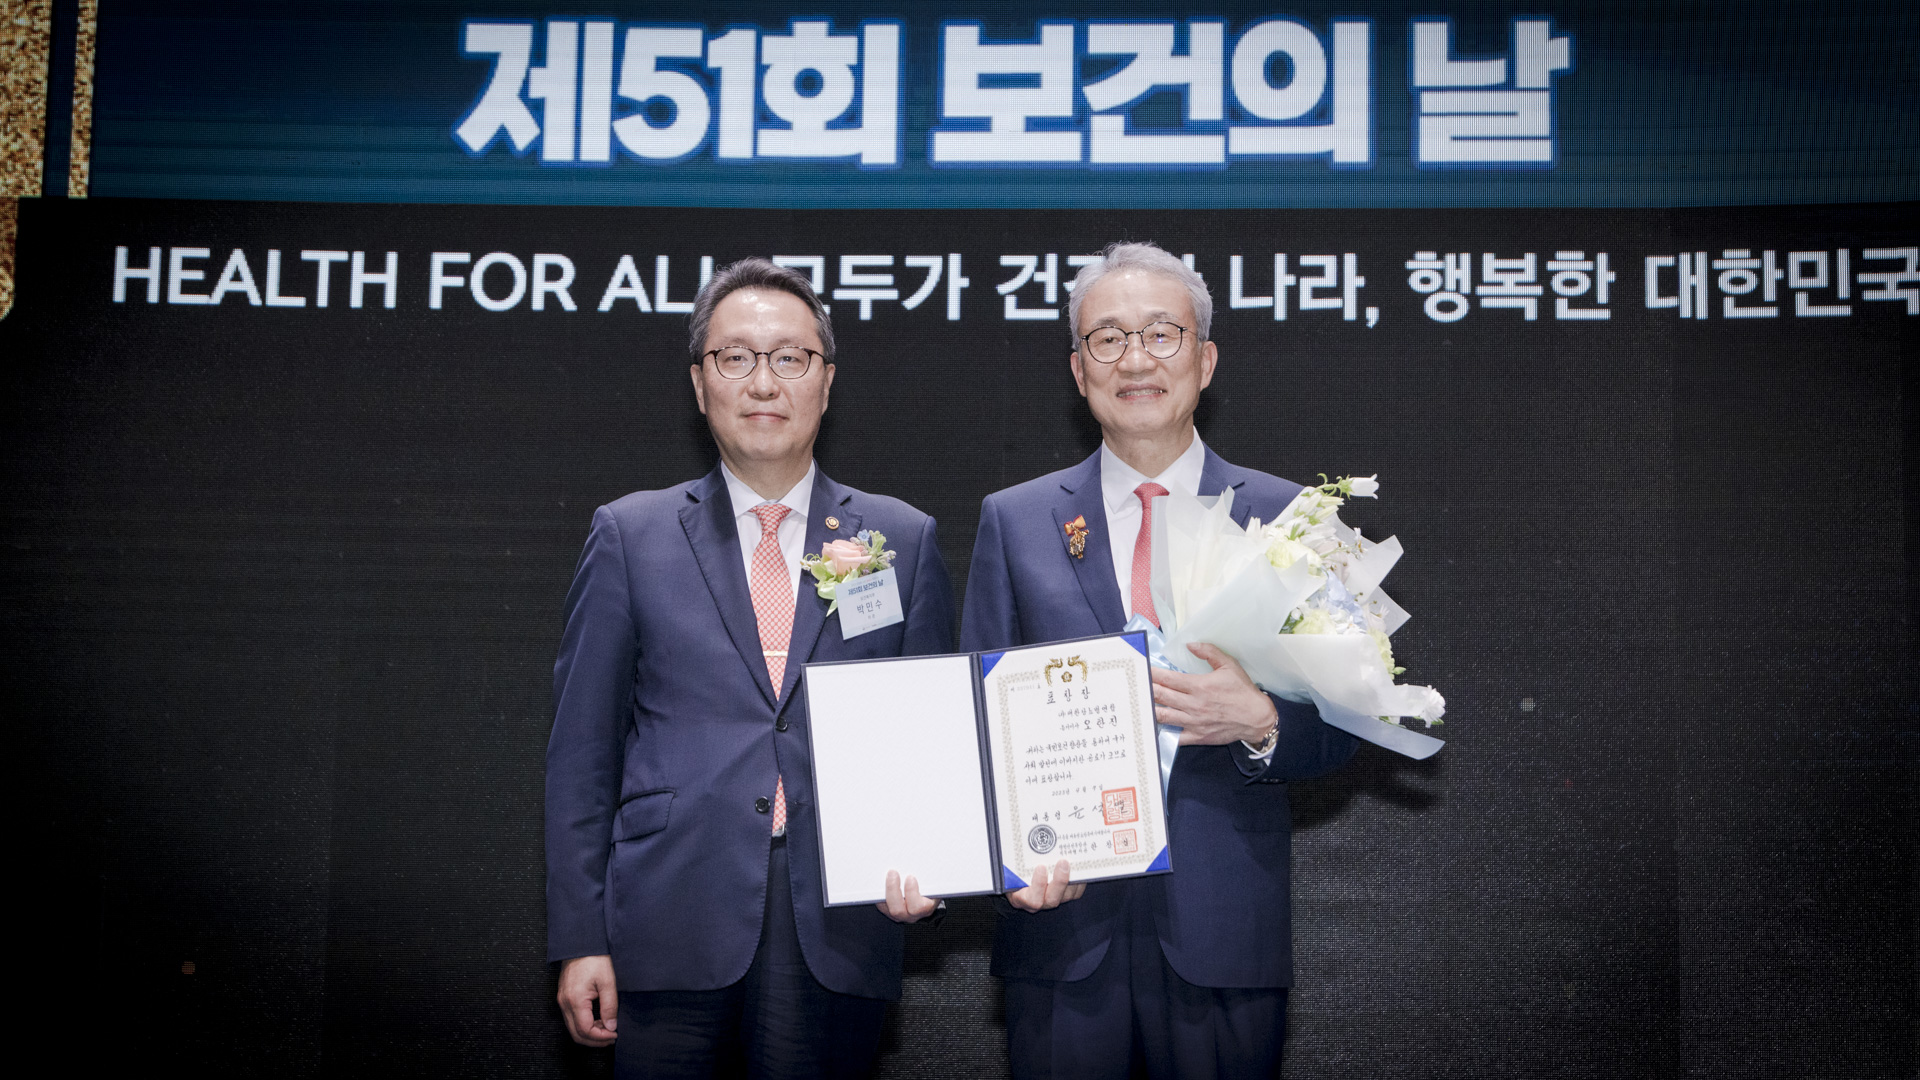 ‘모두가 건강한 나라, 행복한 대한민국’ 제51회 보건의 날 기념식 개최 사진48